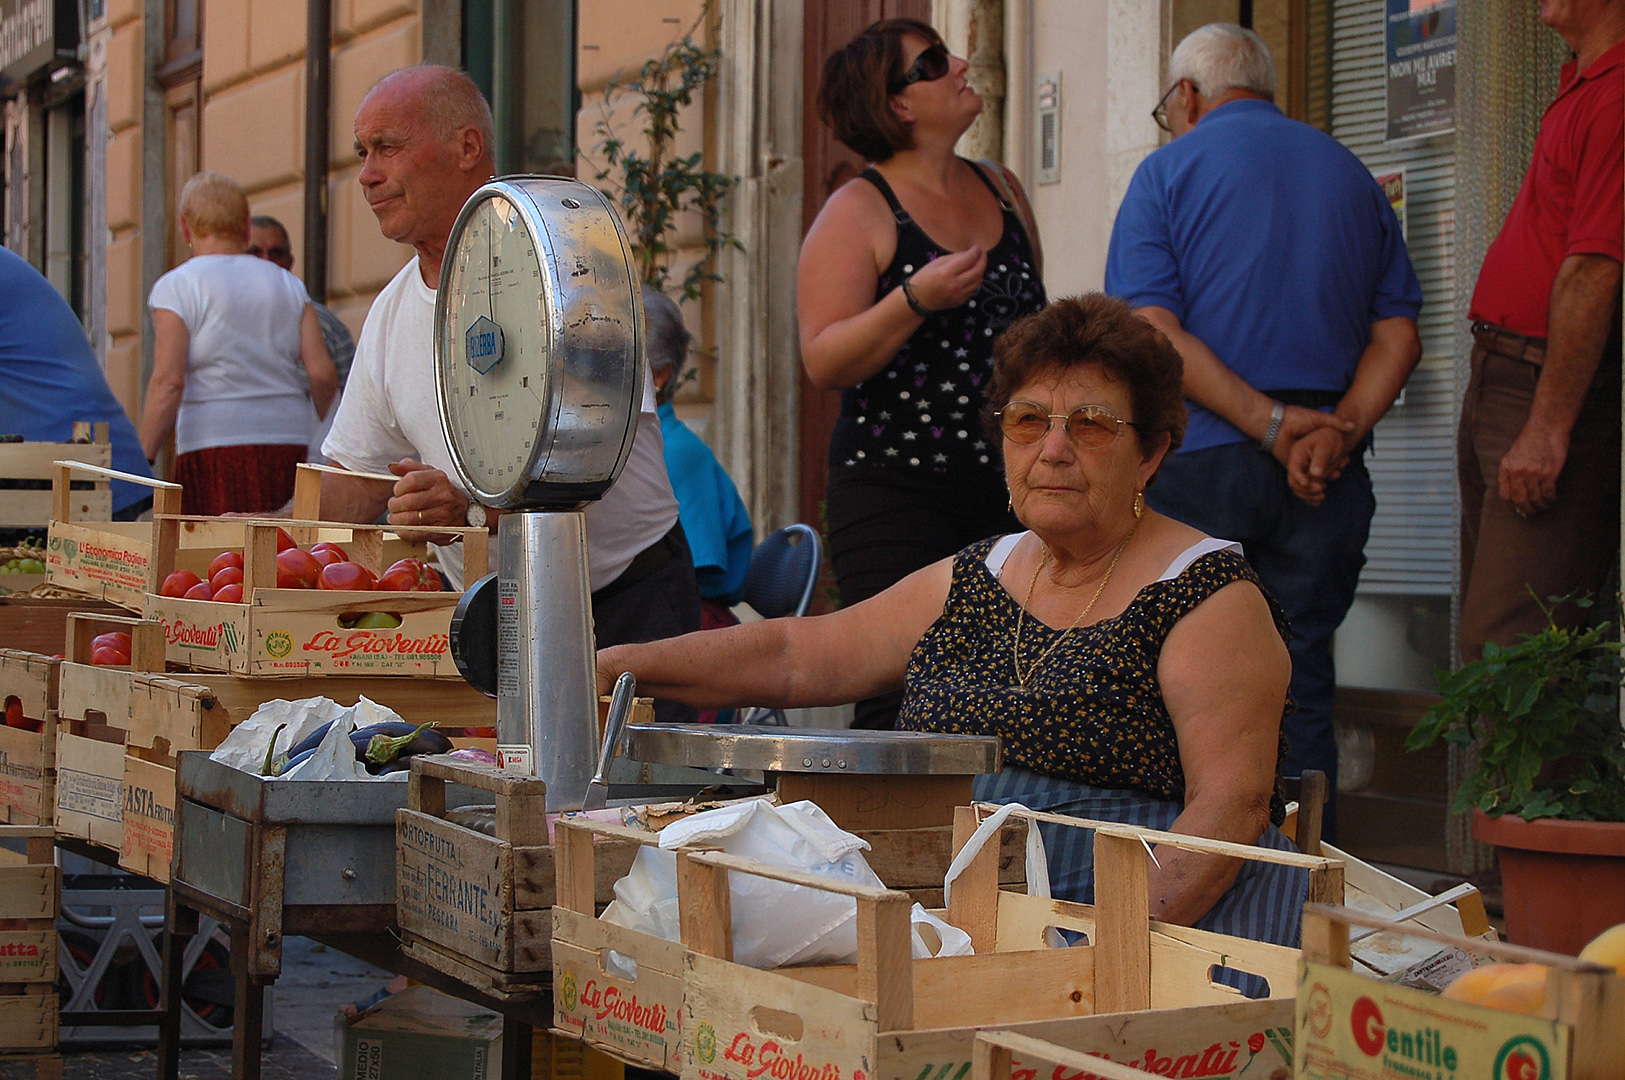 Markt in Popoli (PE, Abruzzen, Italië), Market in Popoli (PE, Abruzzo, Italy)